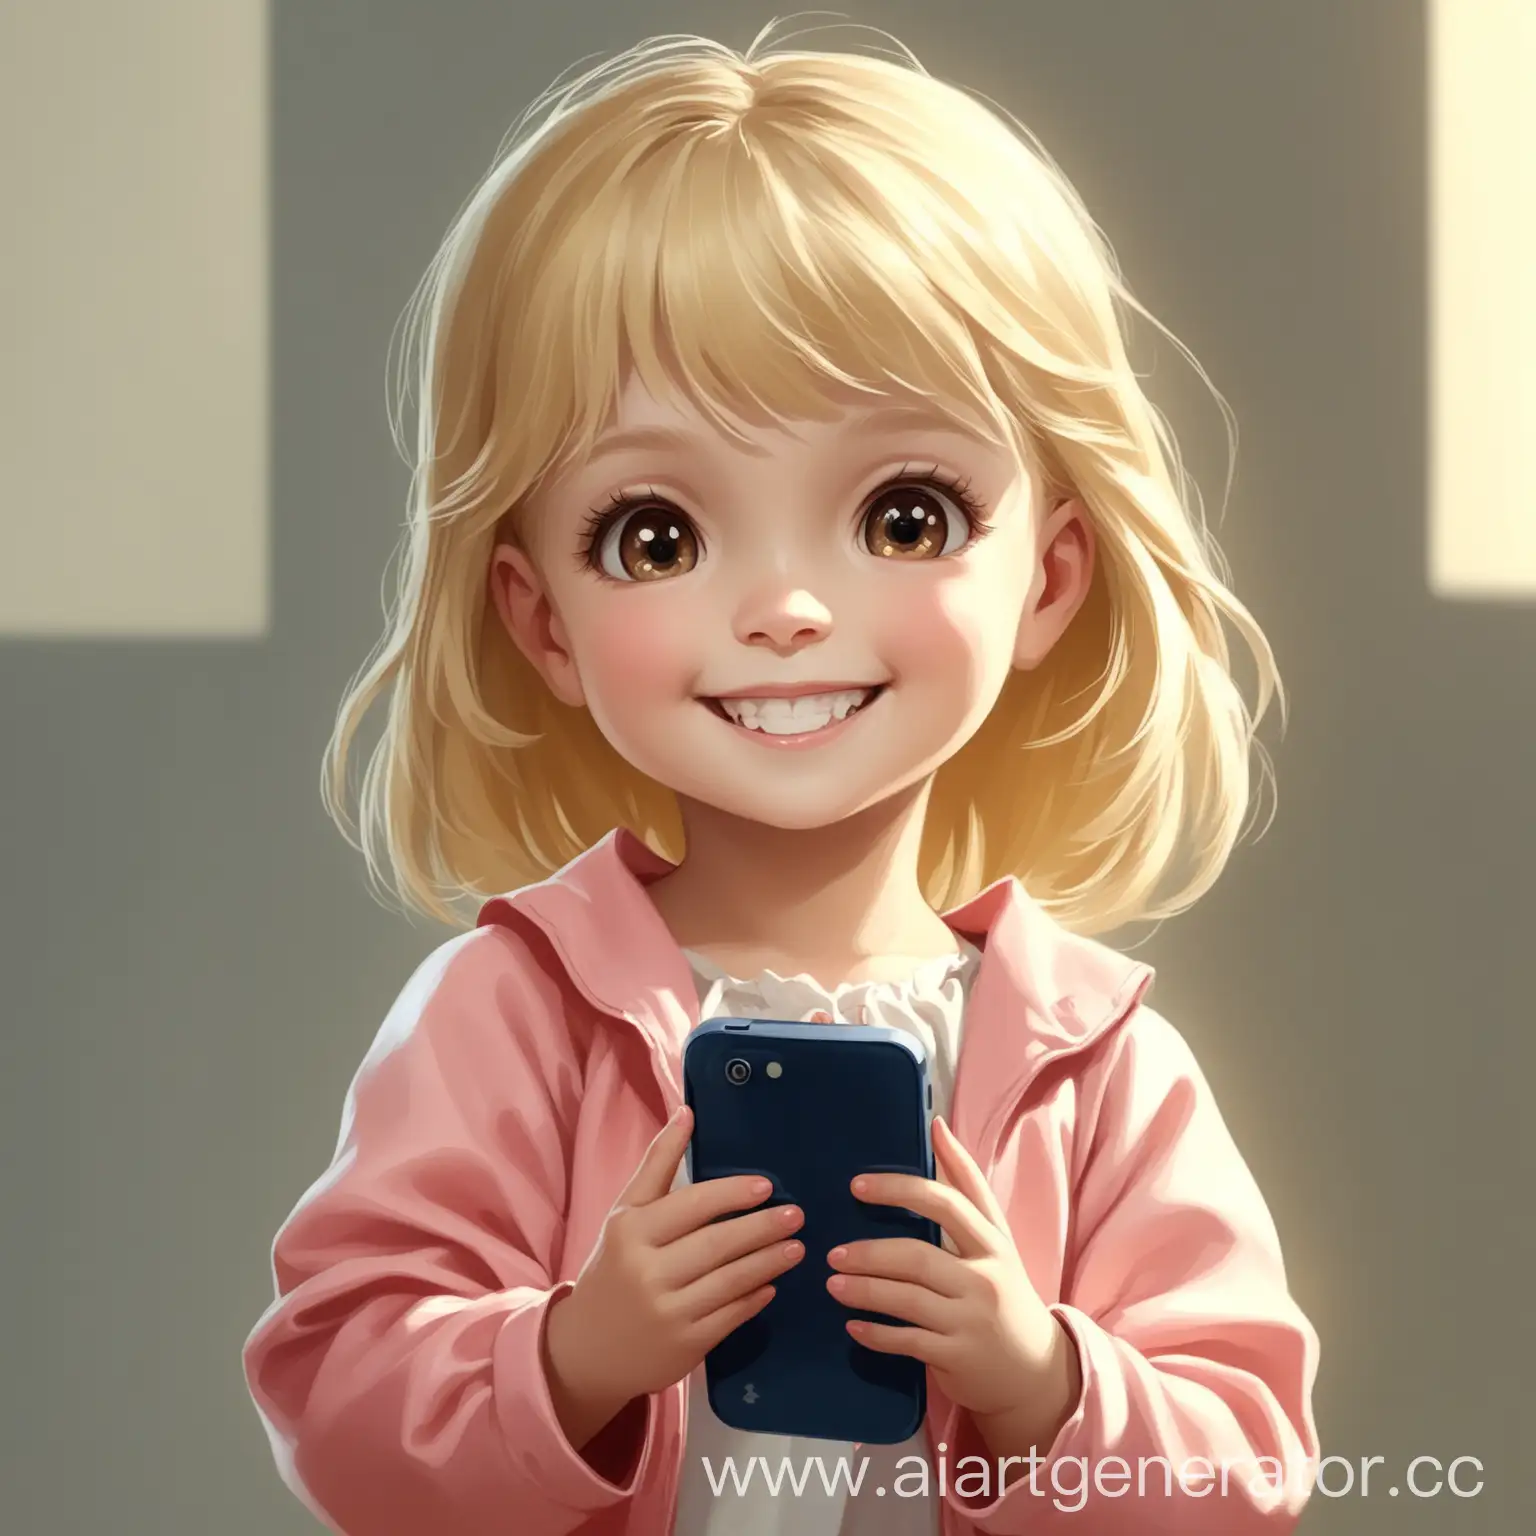 Маленькая девочка со светлыми волосами улыбается и держит в руках телефон